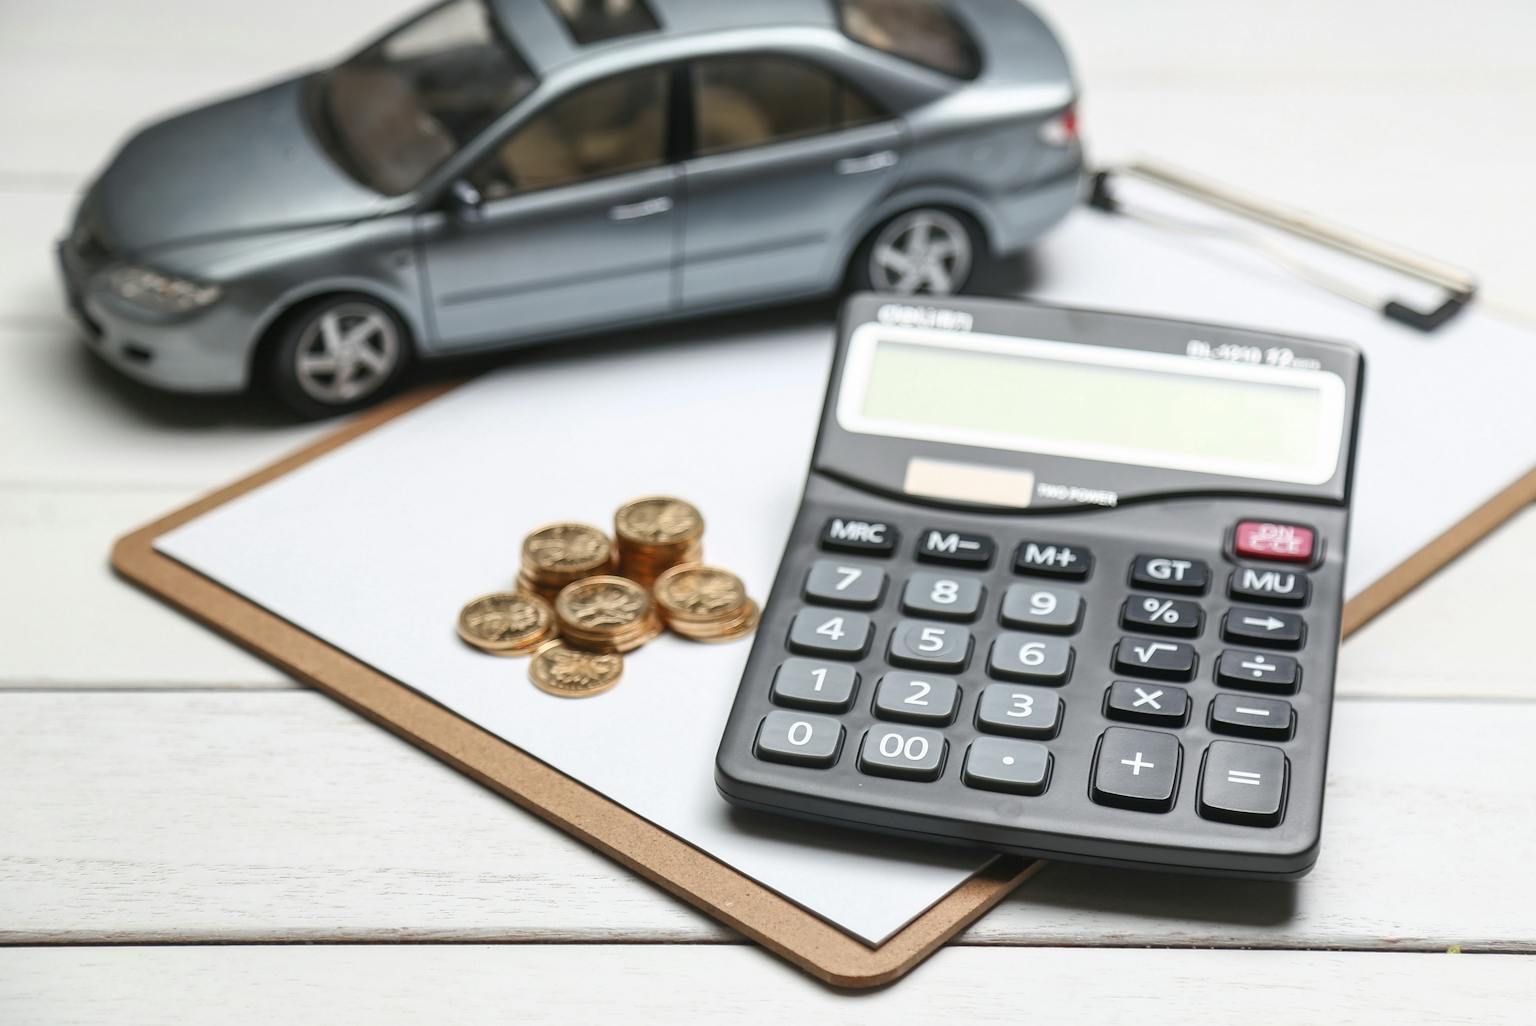 รวมเรื่องภาษี รถยนต์ ที่ควรรู้ จ่ายเท่าไร จ่ายยังไง ต้องใช้เอกสารอะไรบ้าง